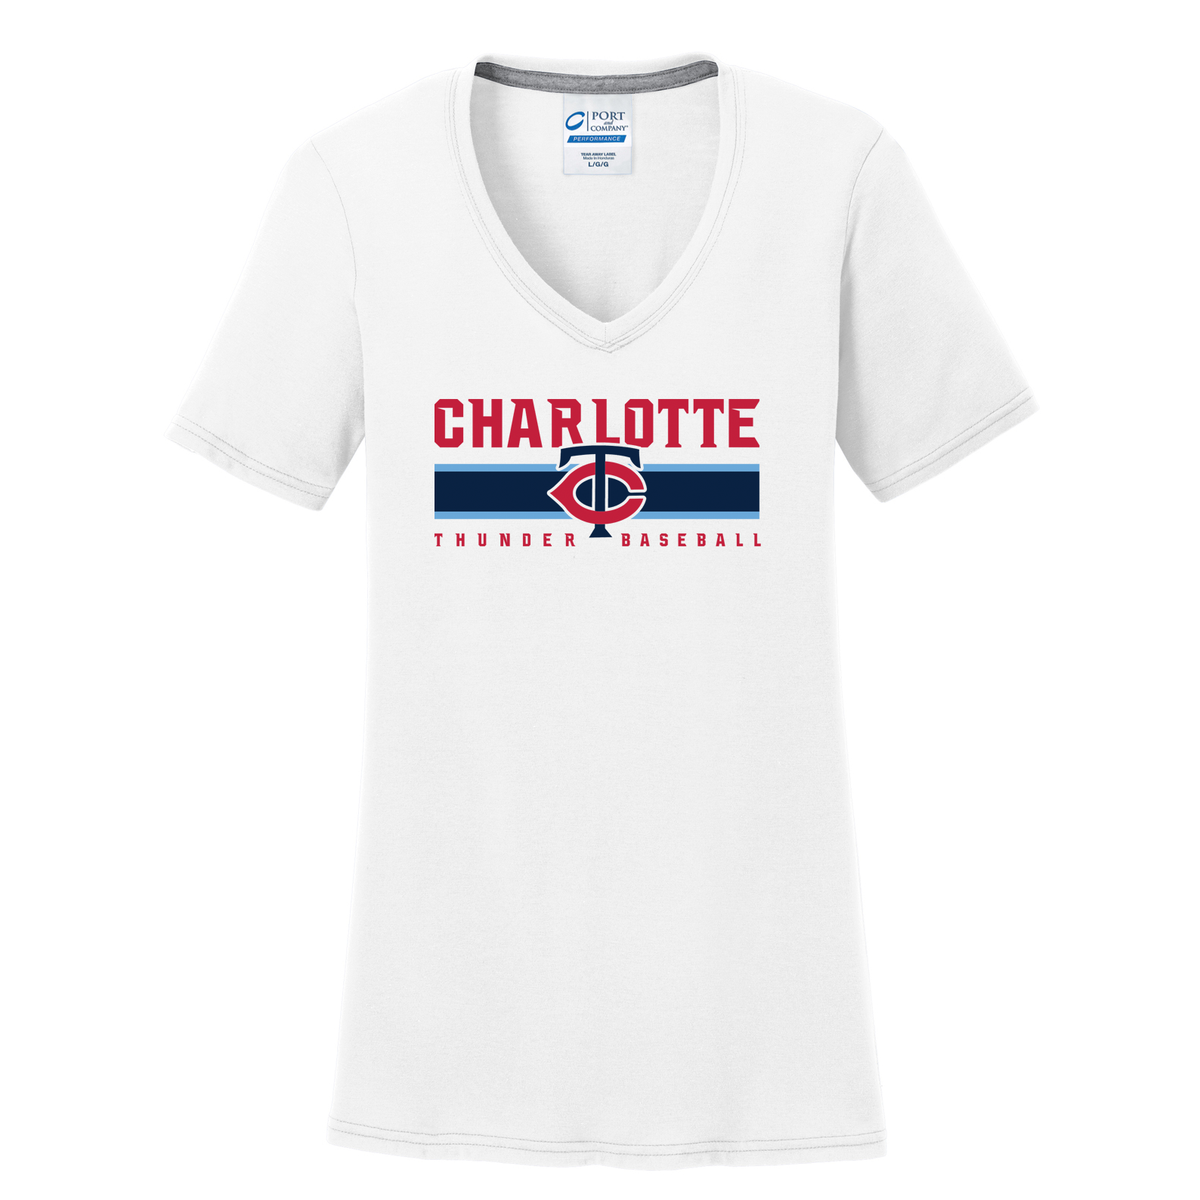 Charlotte Thunder Baseball  Women's T-Shirt